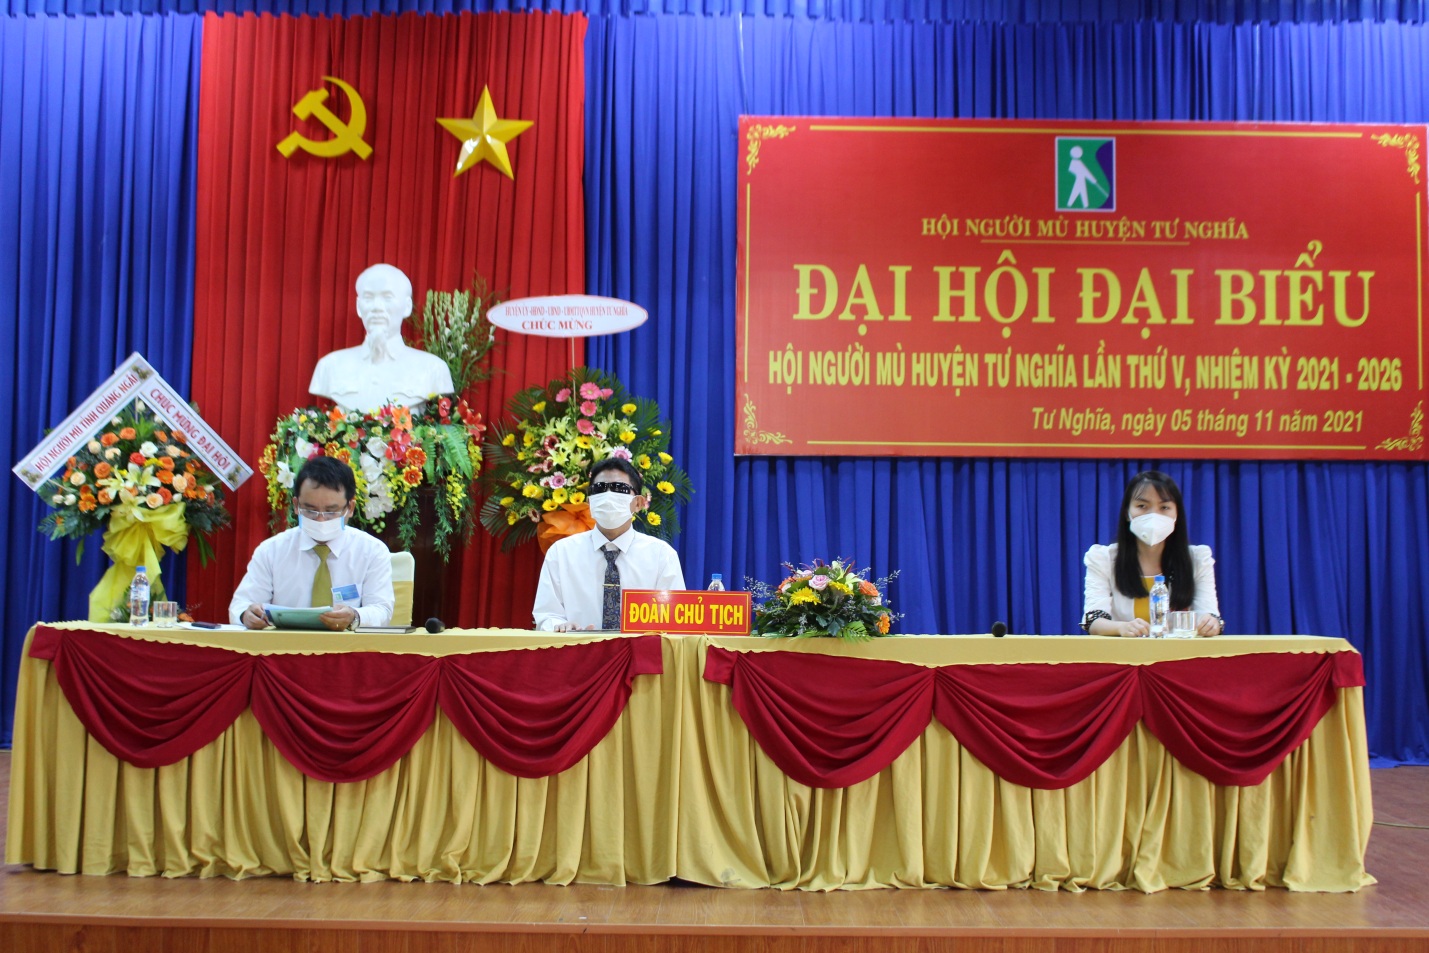 Đại hội Đại biểu Hội người mù huyện Tư Nghĩa lần thứ V, nhiệm kỳ 2021-2026.